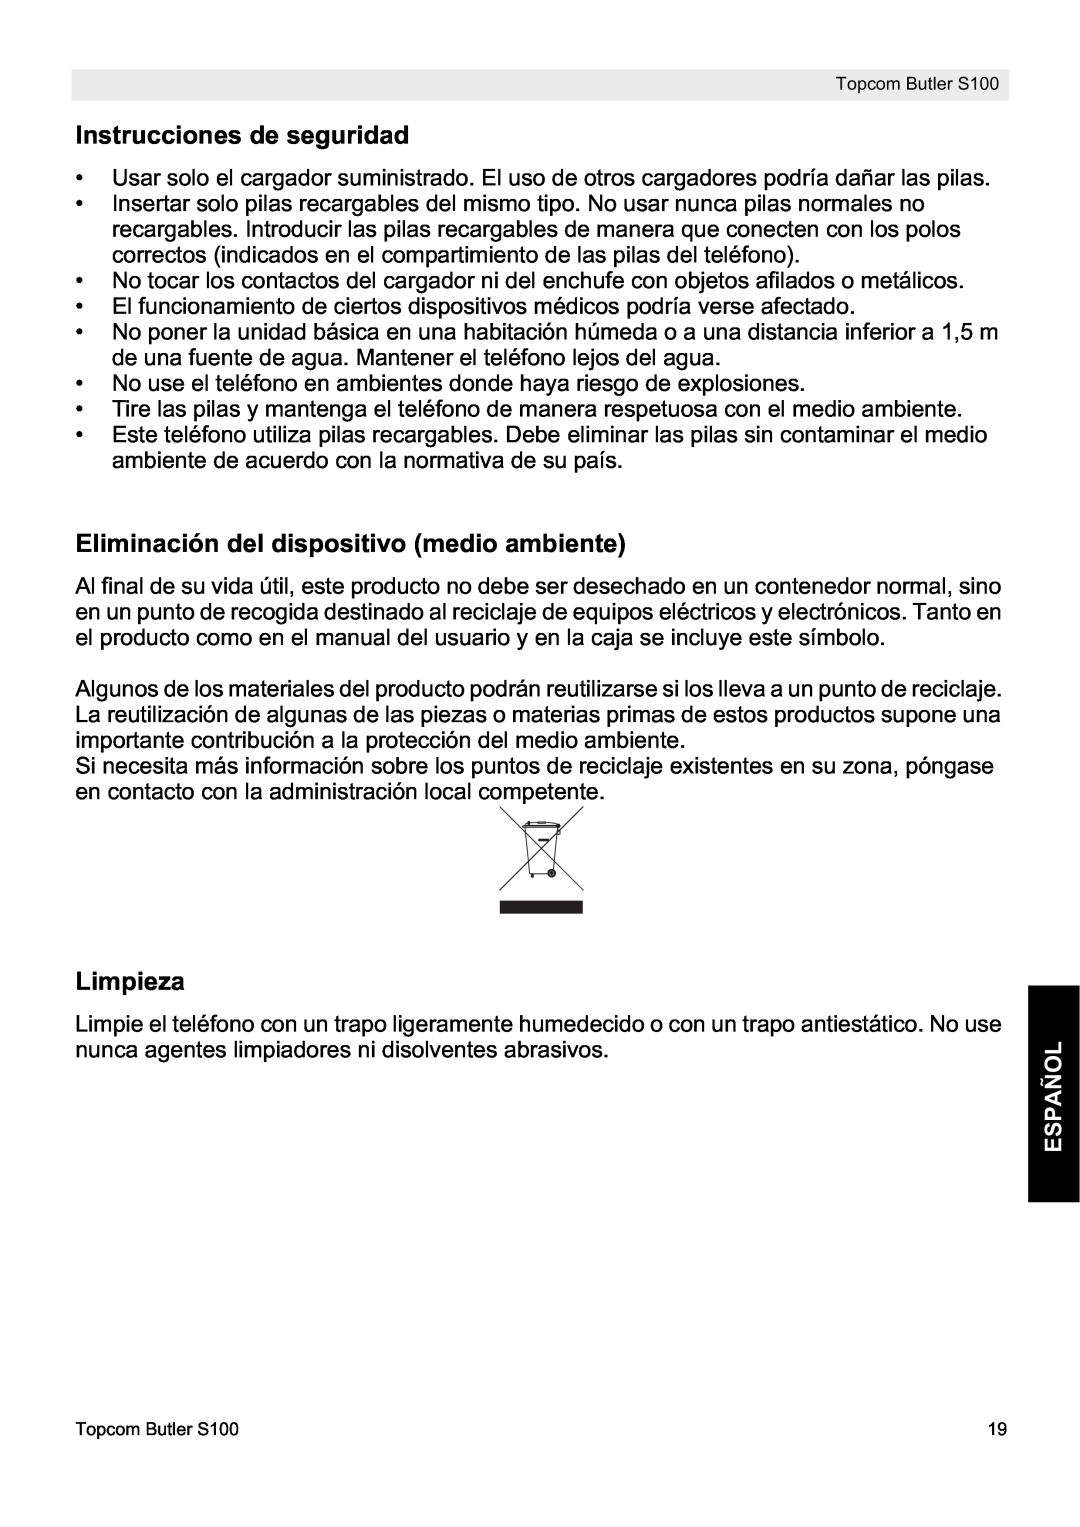 Topcom S100 manual do utilizador Instrucciones de seguridad, Eliminación del dispositivo medio ambiente, Limpieza, Español 